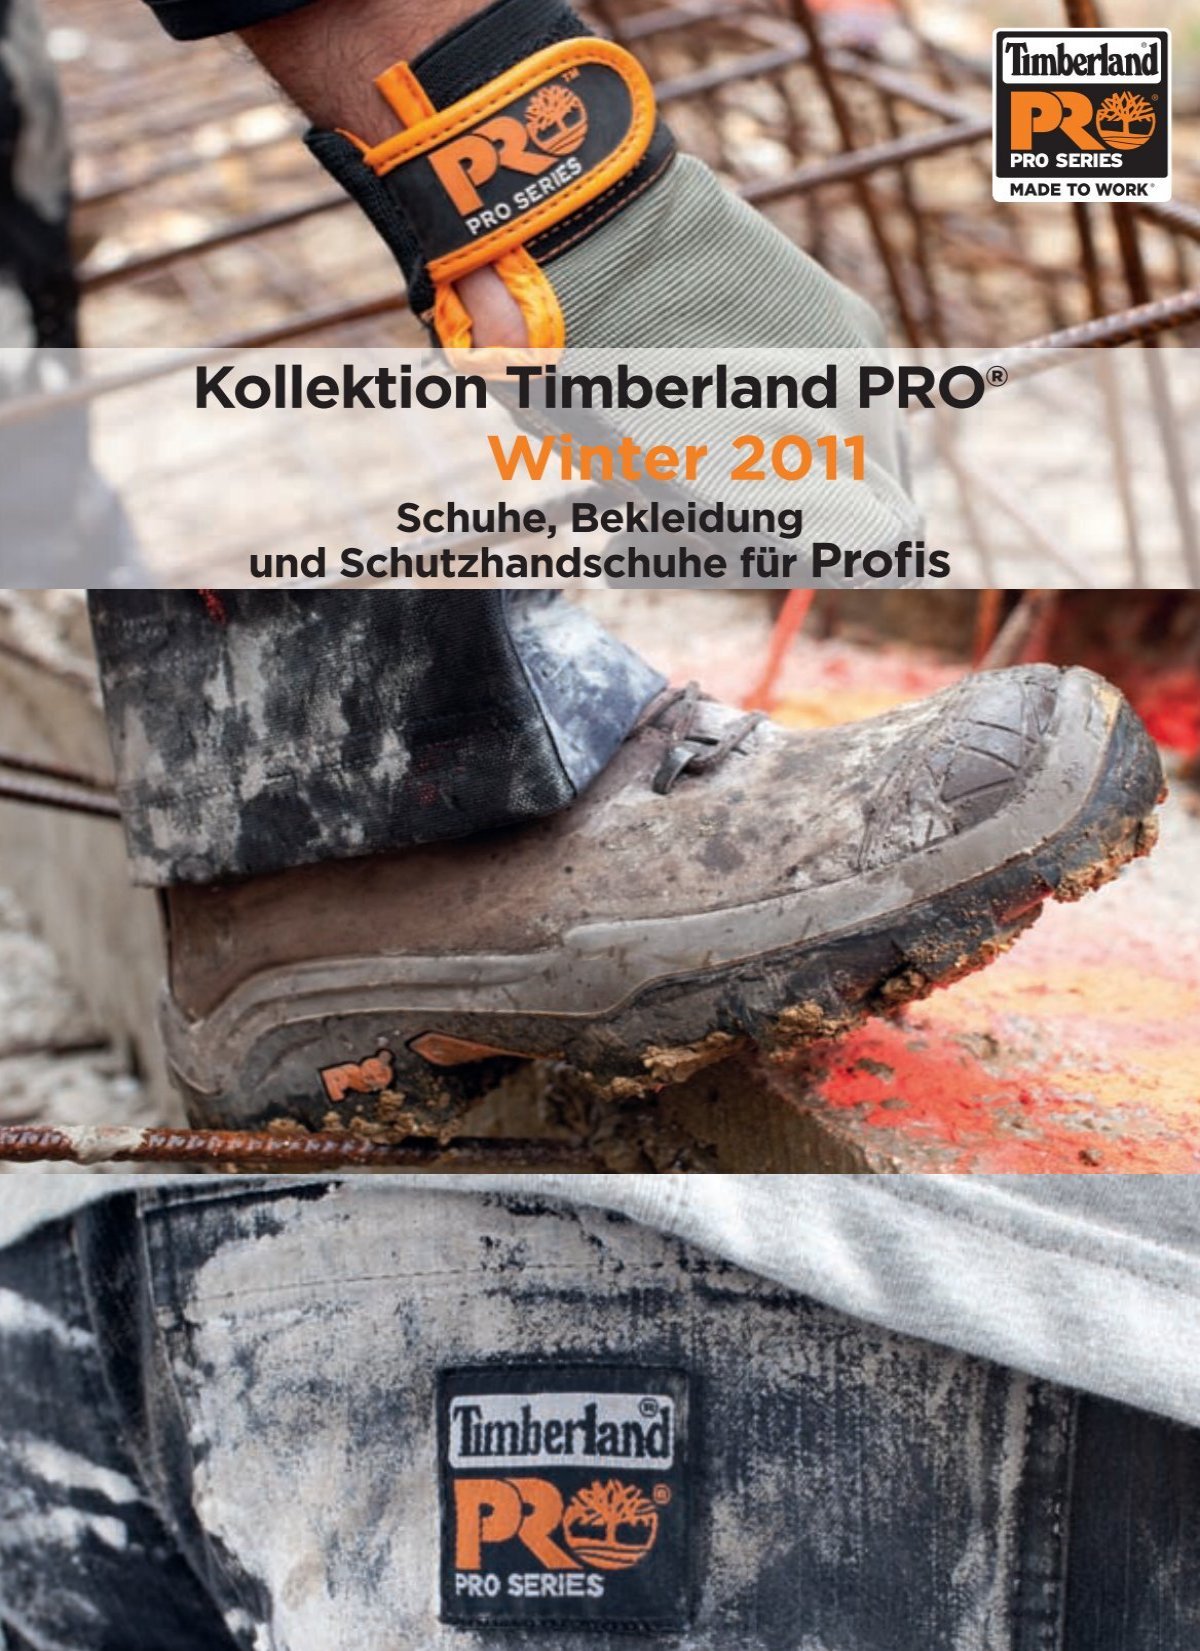 Kollektion Timberland PRO® City-Tools Winter ... - GmbH 2011